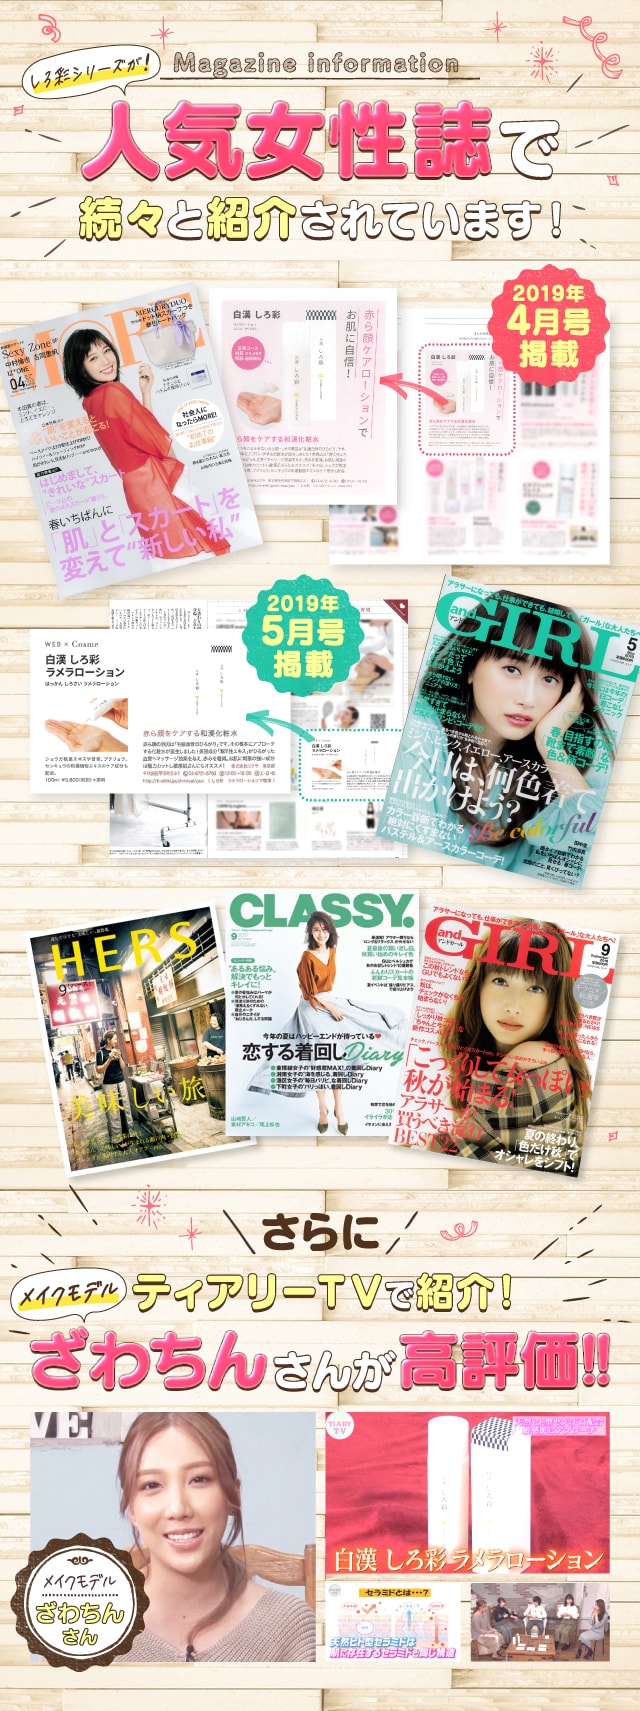 しろ彩シリーズが人気女性雑誌で続々と紹介されています。